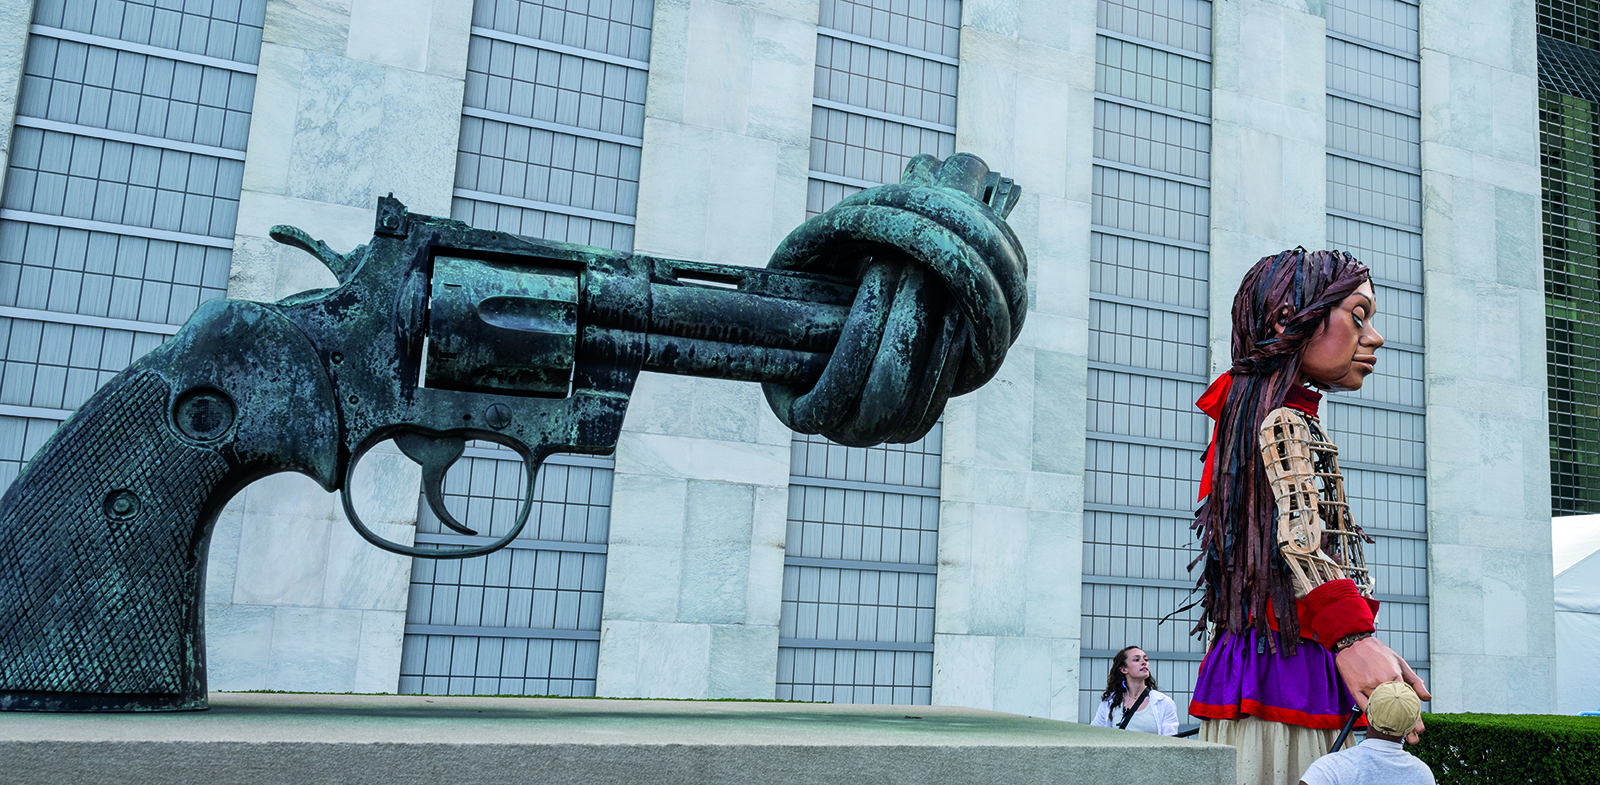 Une sculpture en forme de pistolet noué et une grande marionnette représentant une jeune fille, au Siège des Nations Unies.